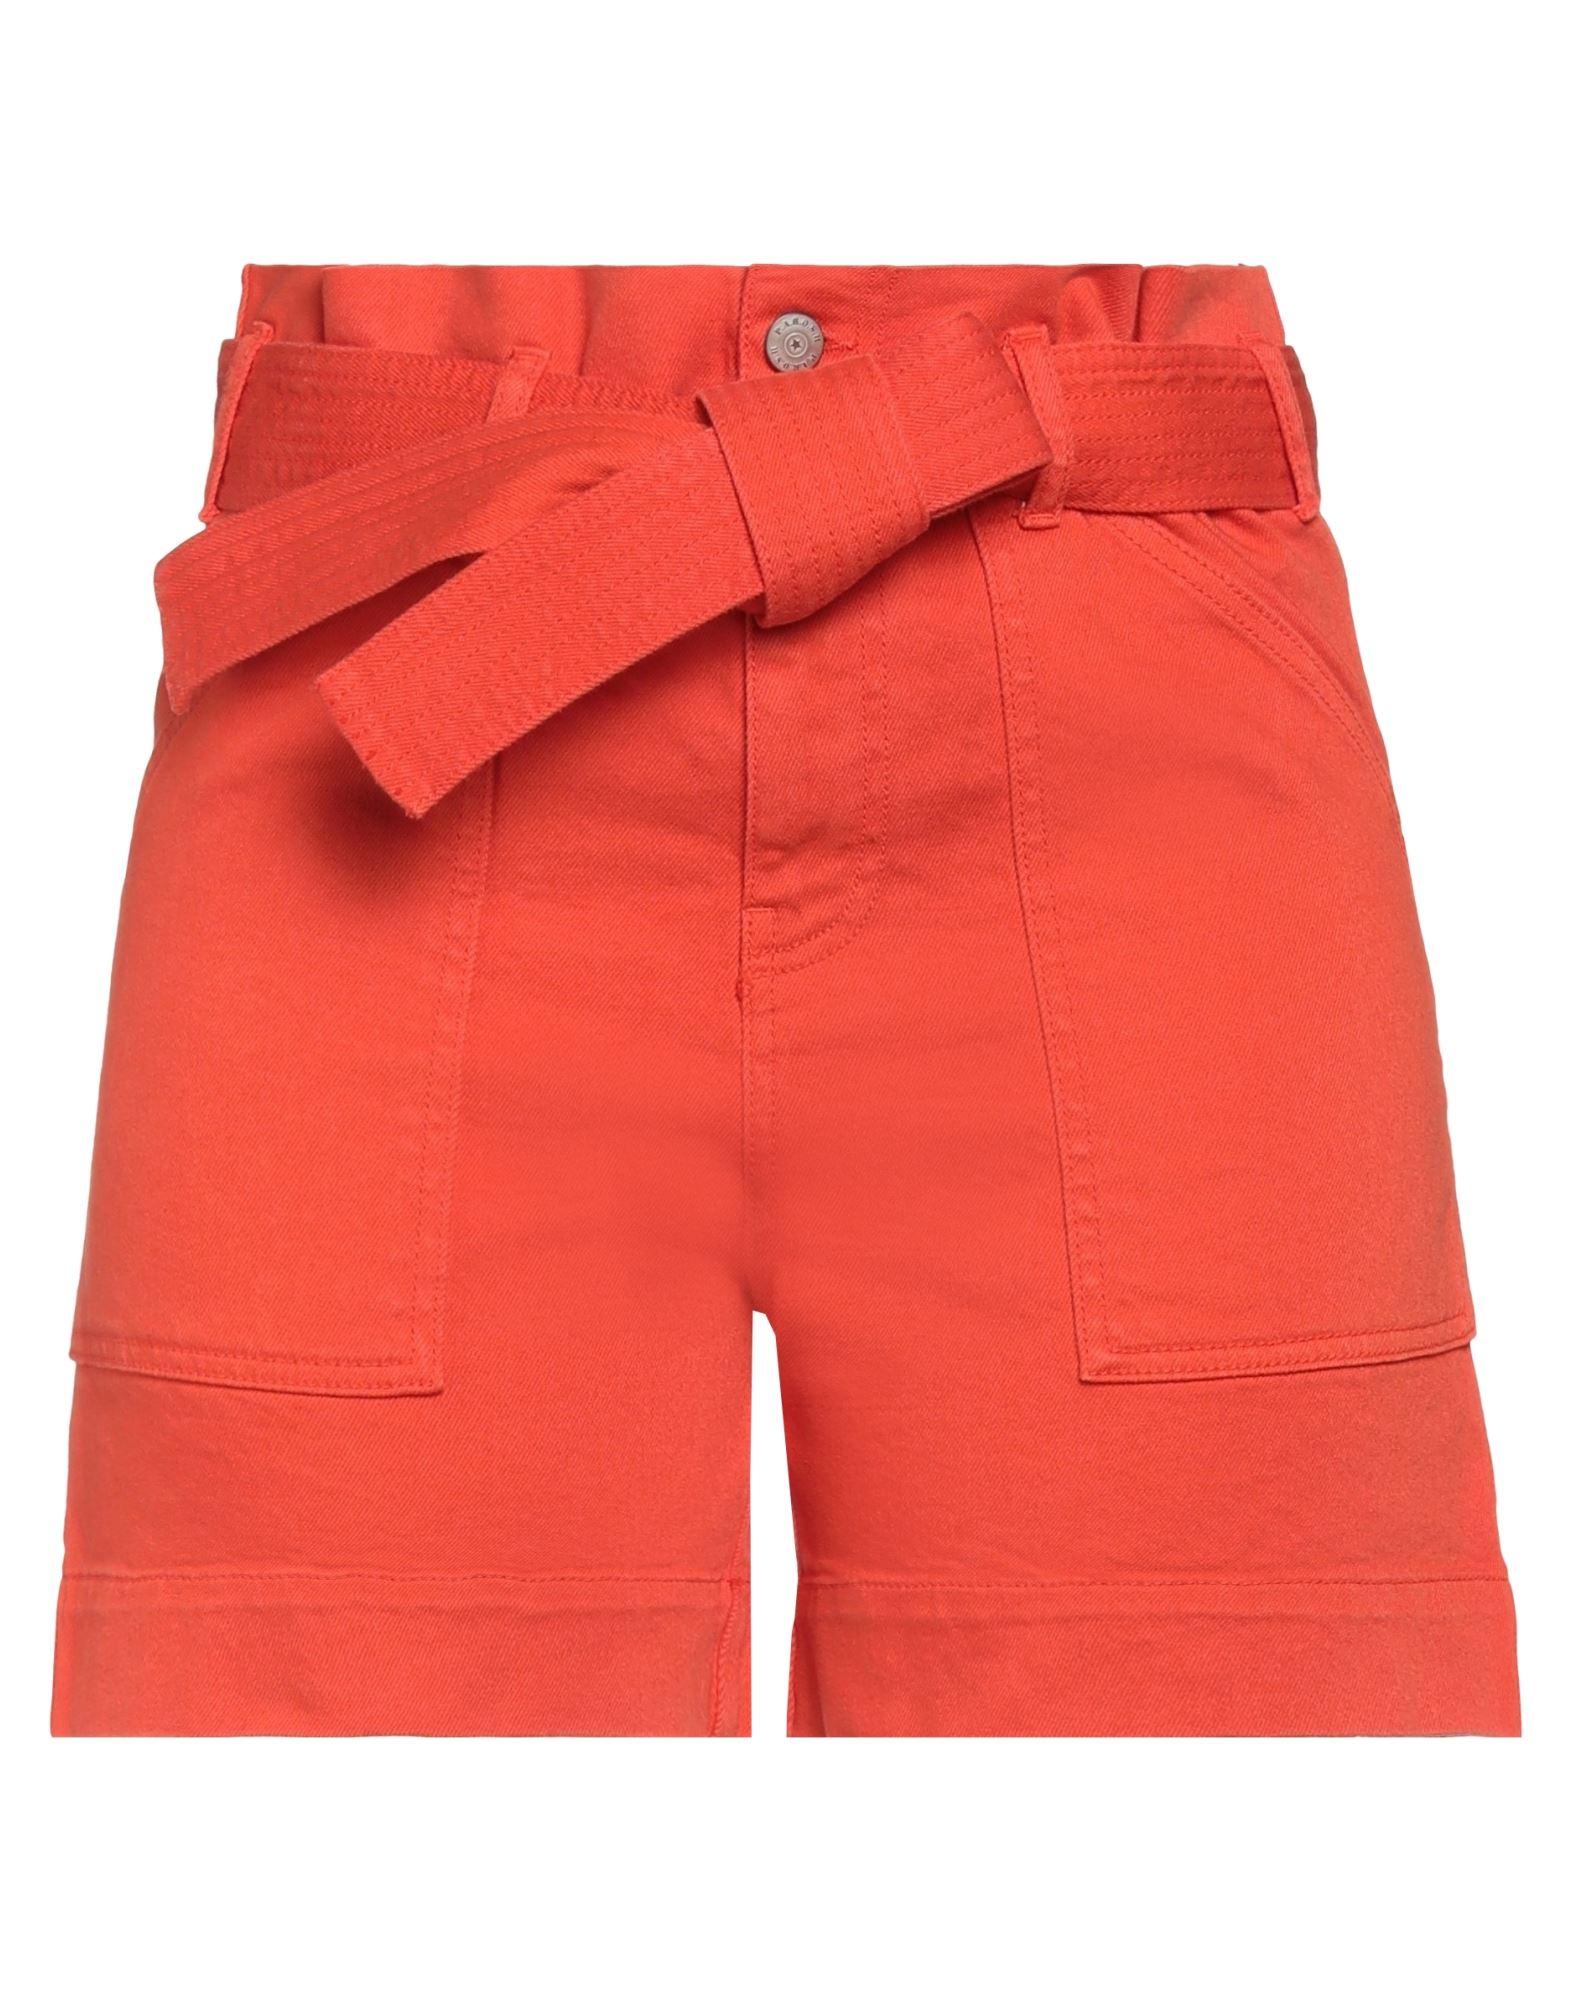 P.a.r.o.s.h P. A.r. O.s. H. Woman Shorts & Bermuda Shorts Orange Size Xs Cotton, Elastane